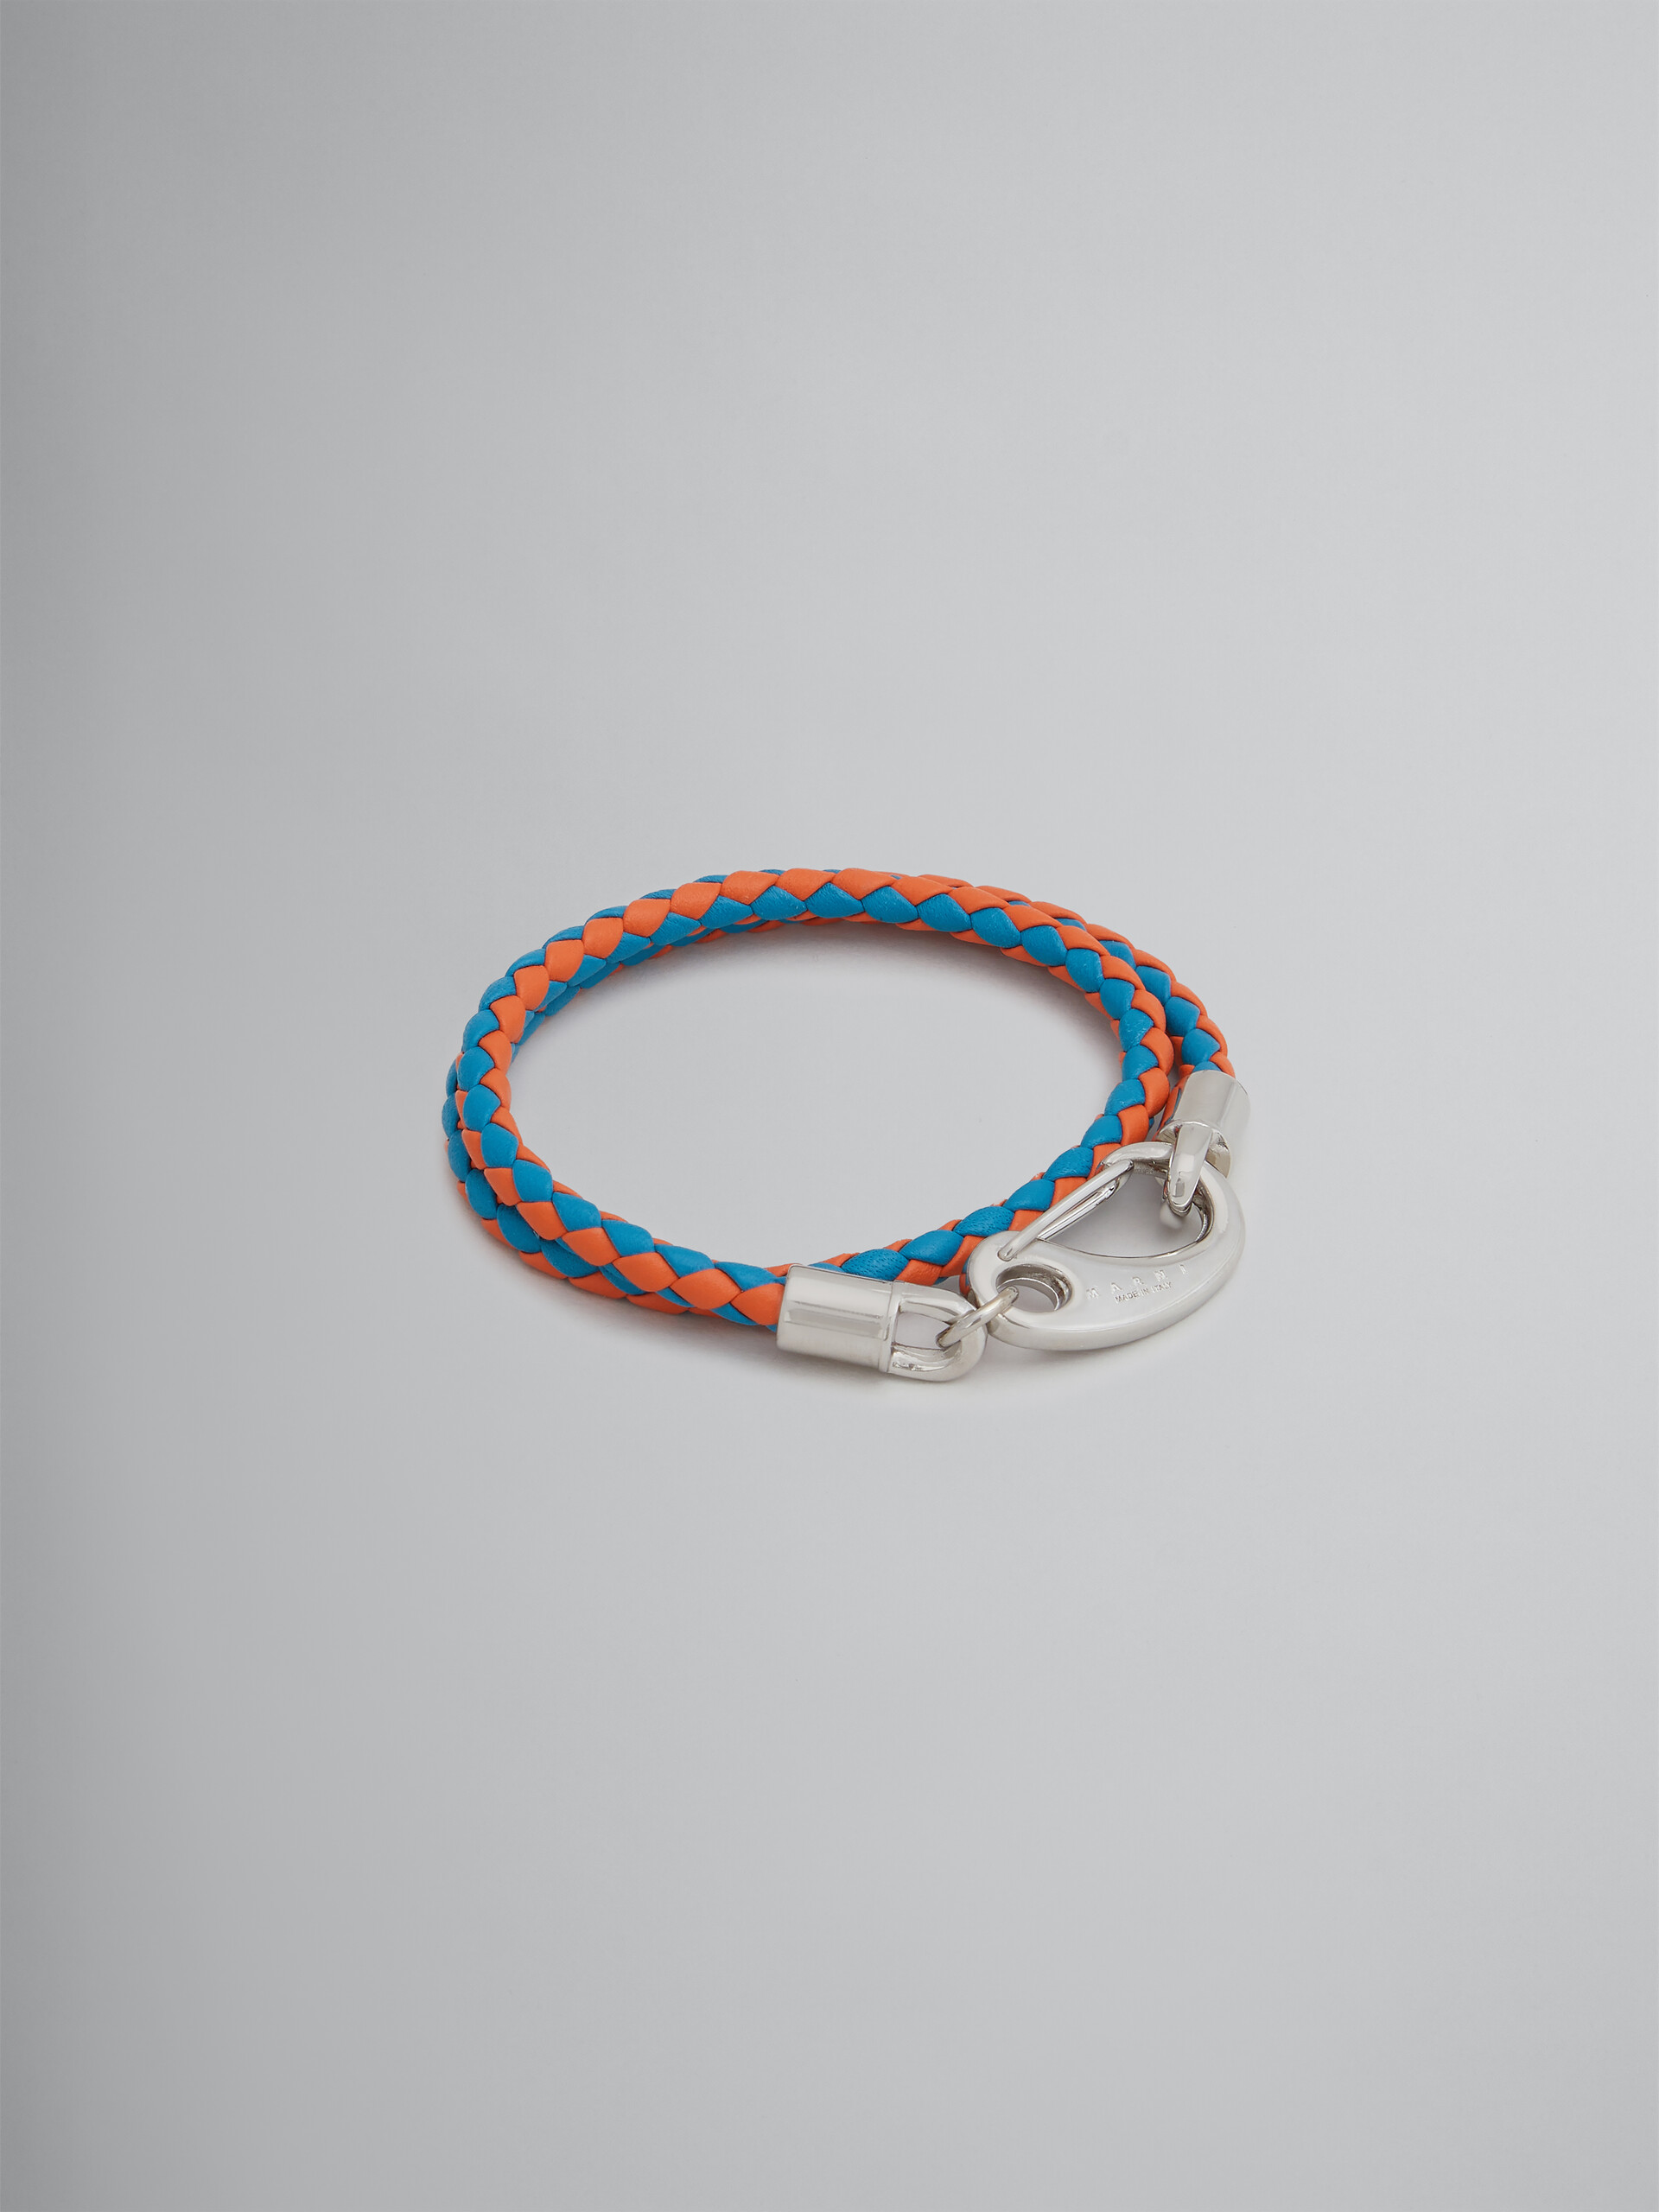 Turquoise and orange woven leather bracelet - Bracelets - Image 1